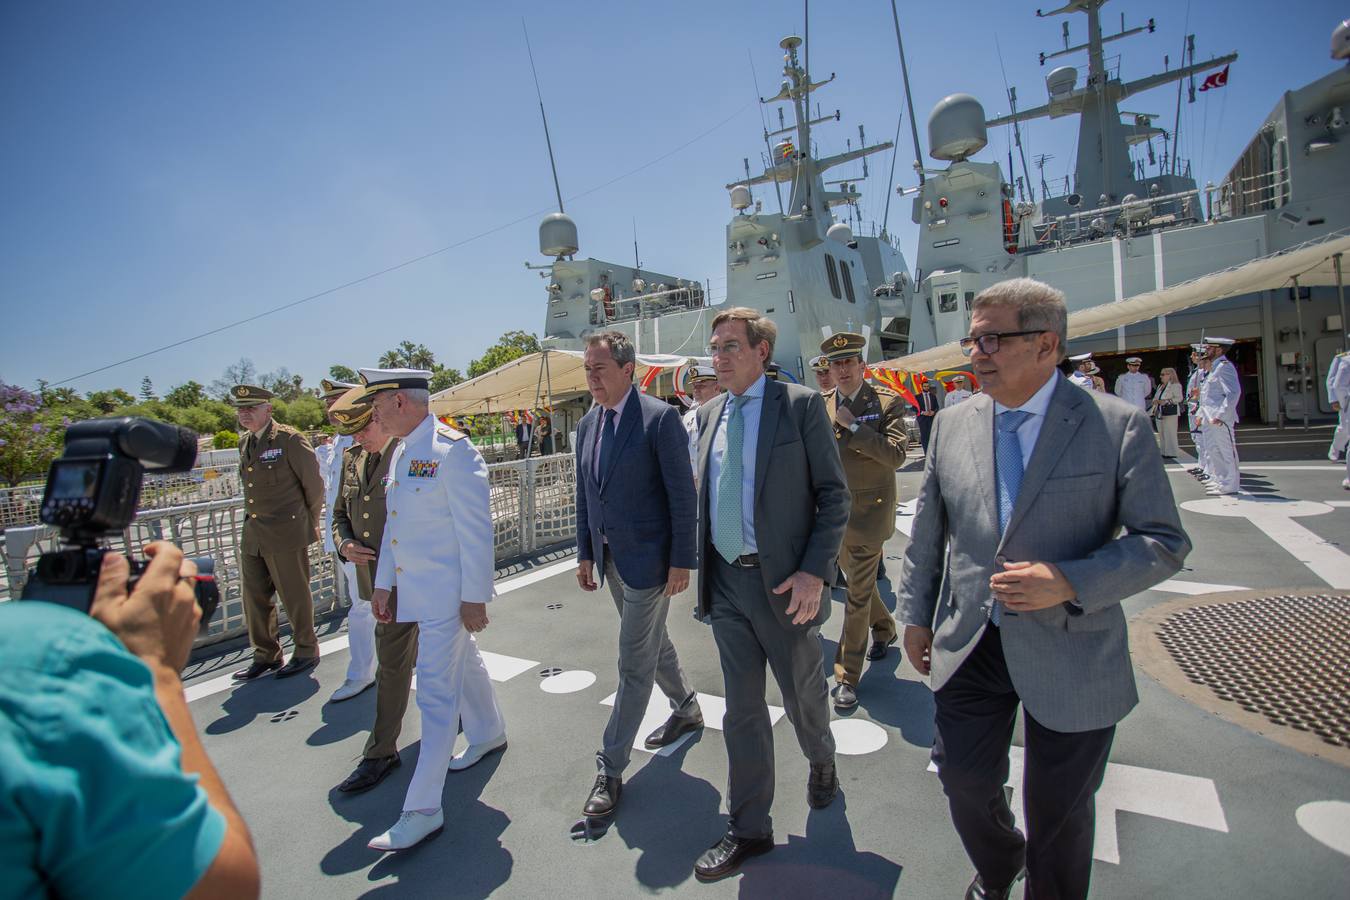 Cinco buques militares y un submarino pueden visitarse en el muelle de las Delicias